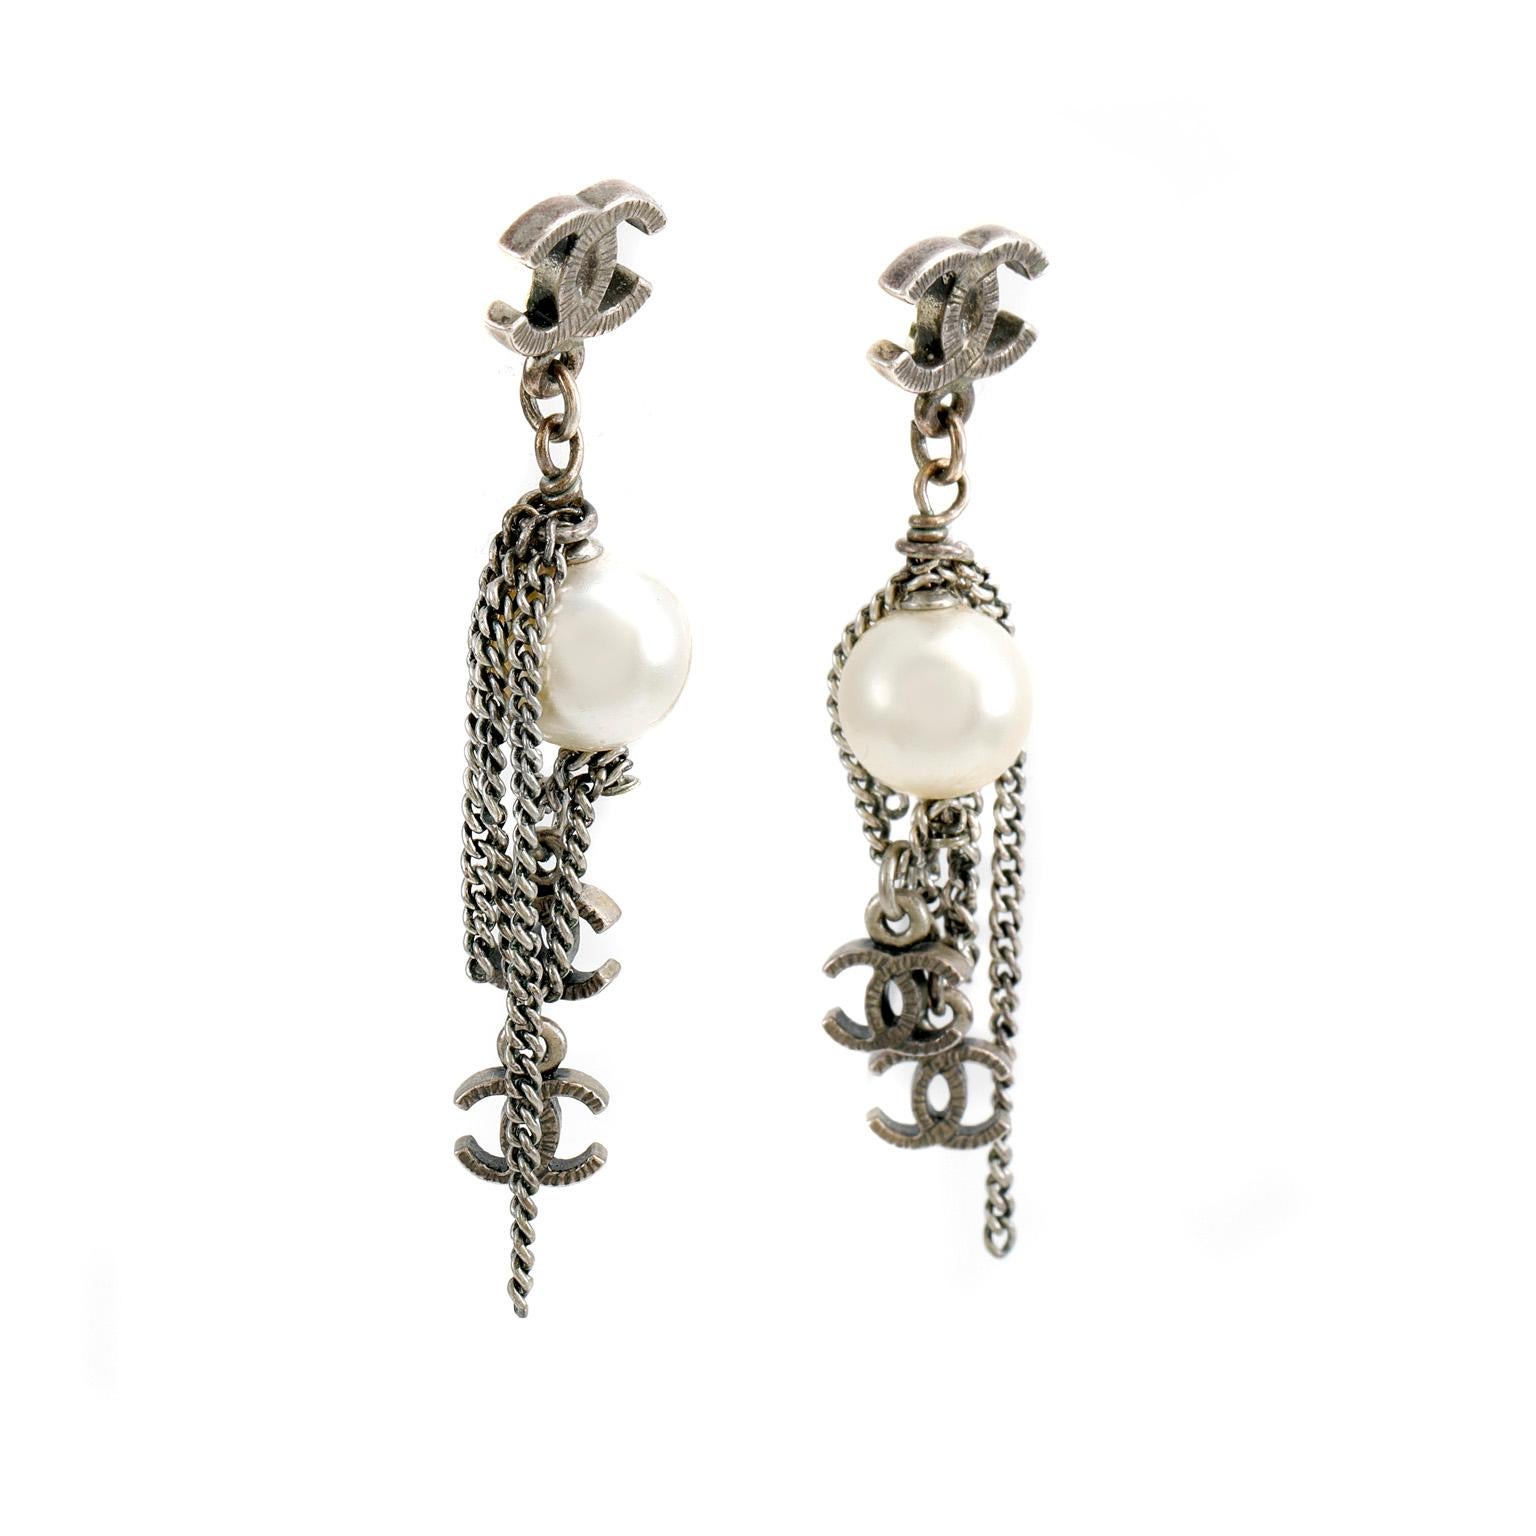 Diese authentischen Chanel Pearl Dripping Chains CC Ohrringe sind in tadellosem Zustand.   Eine runde Kunstperle und silberne Ketten baumeln von einem silbernen, ineinandergreifenden CC.  Kleinere silberne, ineinander greifende CC-Charme am Fuß der